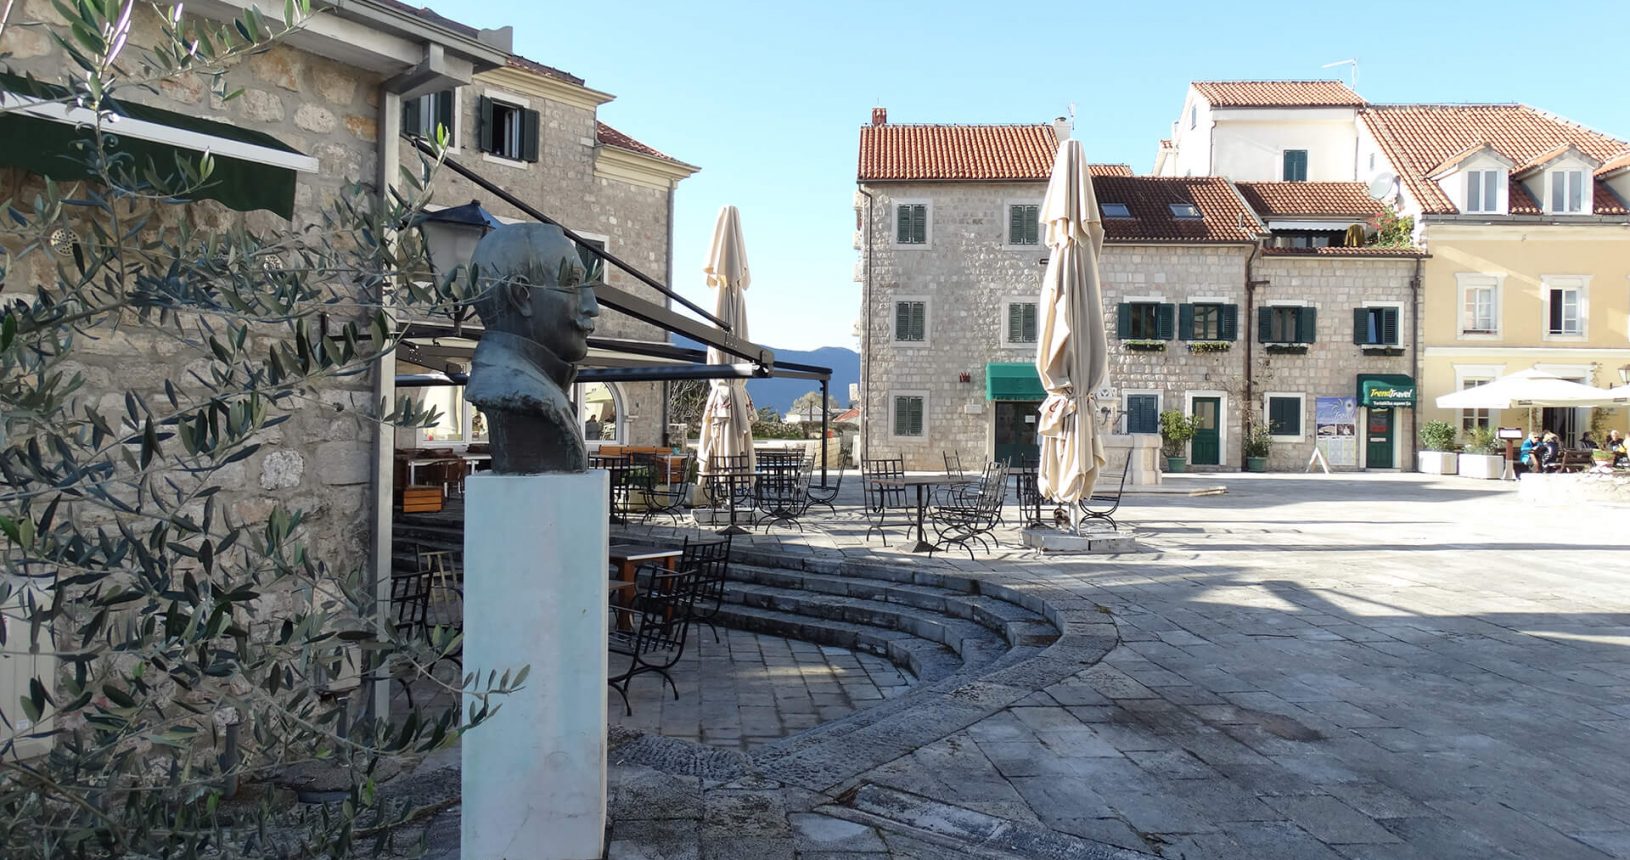 In old city of Herceg Novi